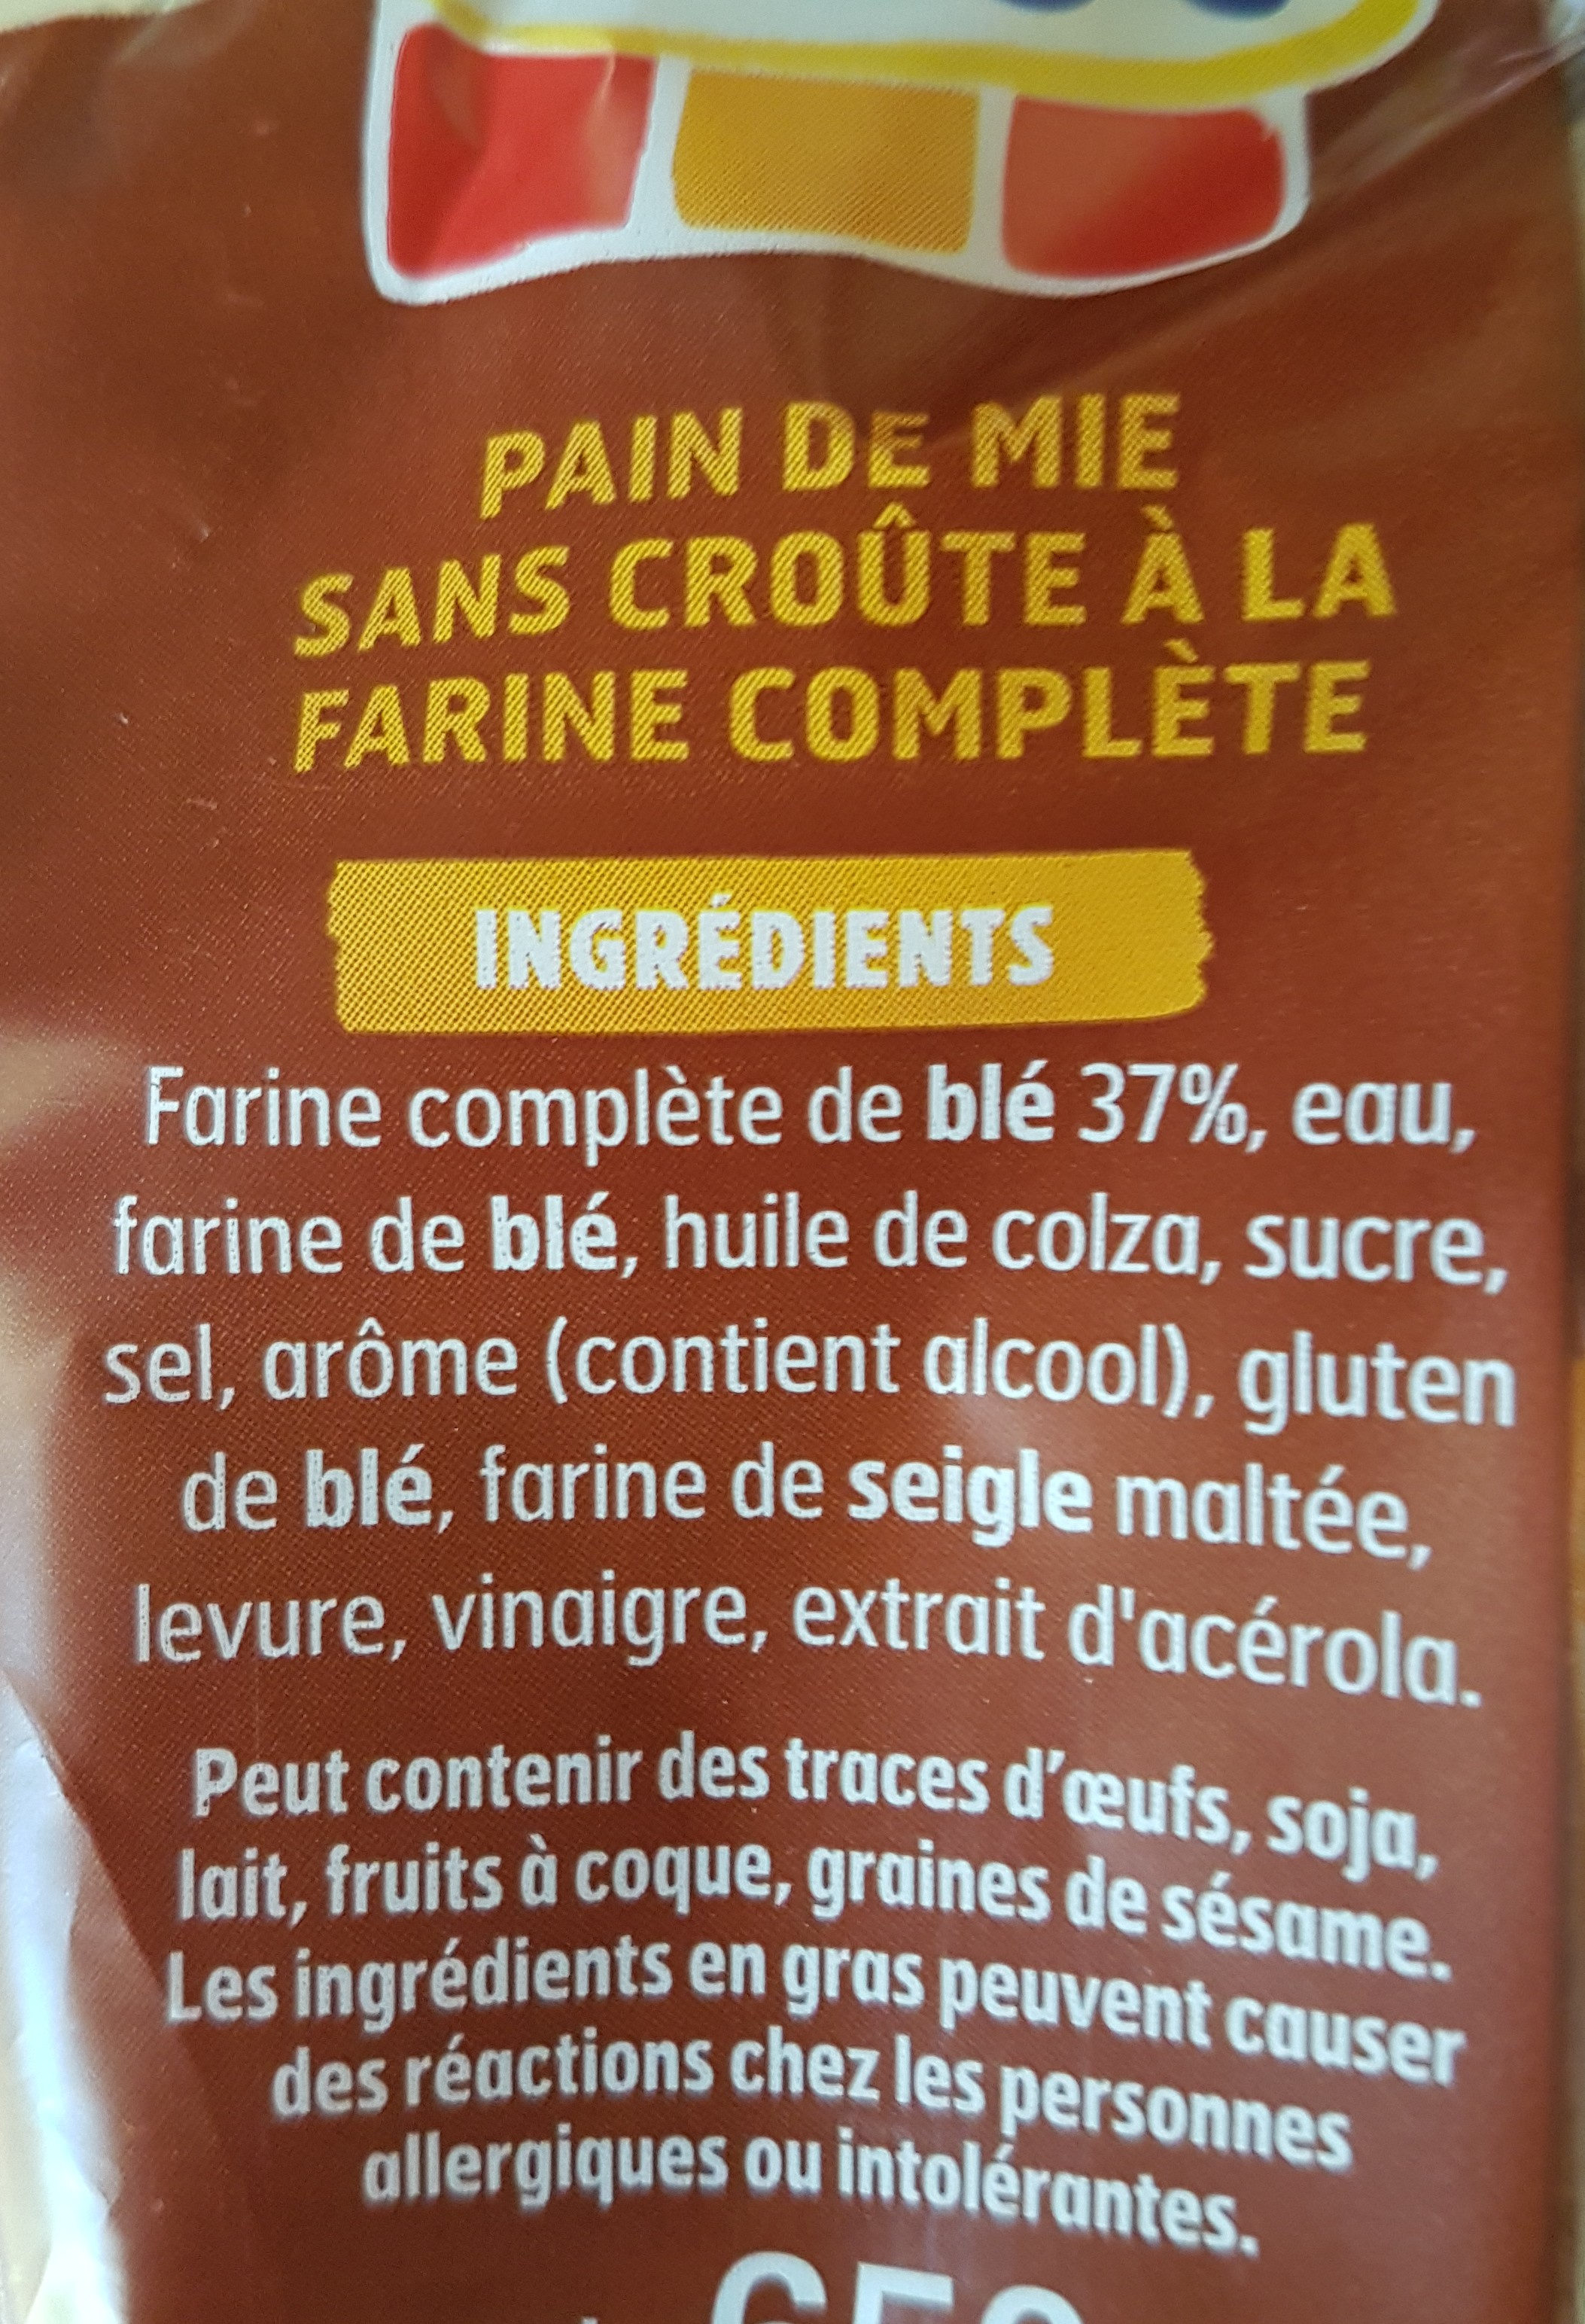 Pain de mie 100% mie complet sans croute - Ingrediënten - fr